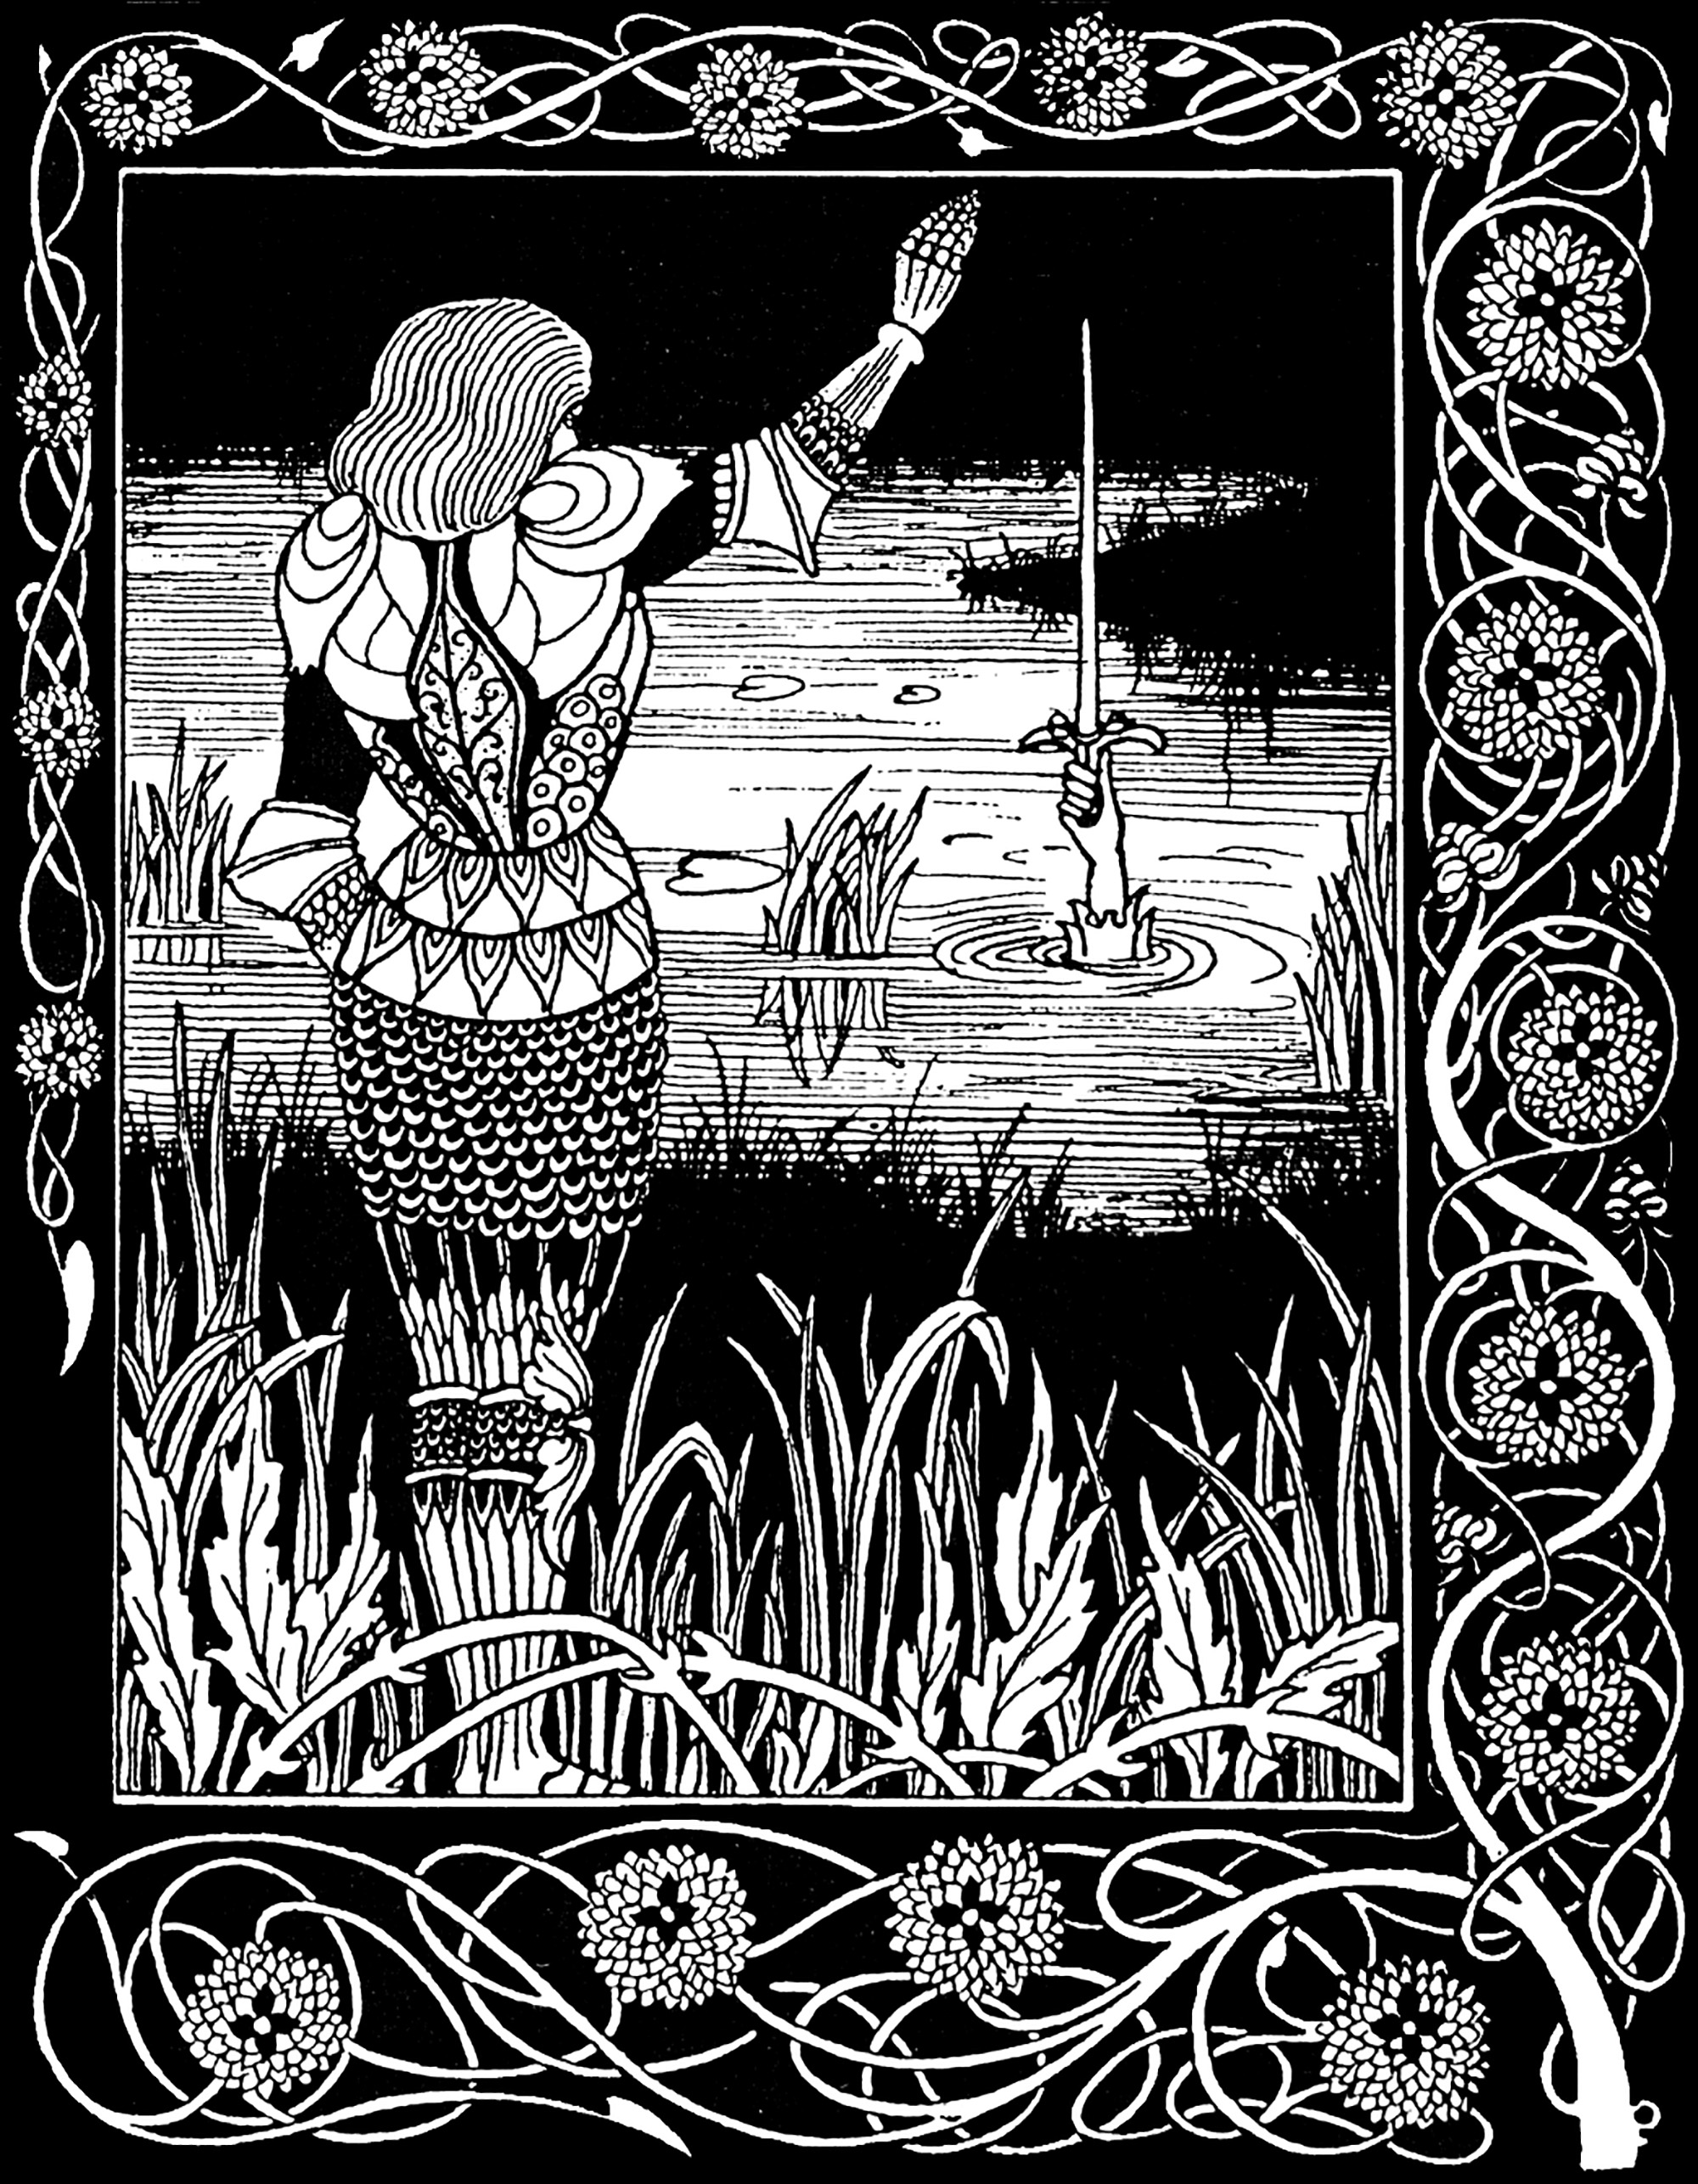 Sir Bedivere atira Excalibur, a espada de Artur, para o lago de onde veio. Ilustração de Aubrey Beardsley (1872-1898) para uma edição de La Mort d'Arthur de Sir Thomas Malory (1893).